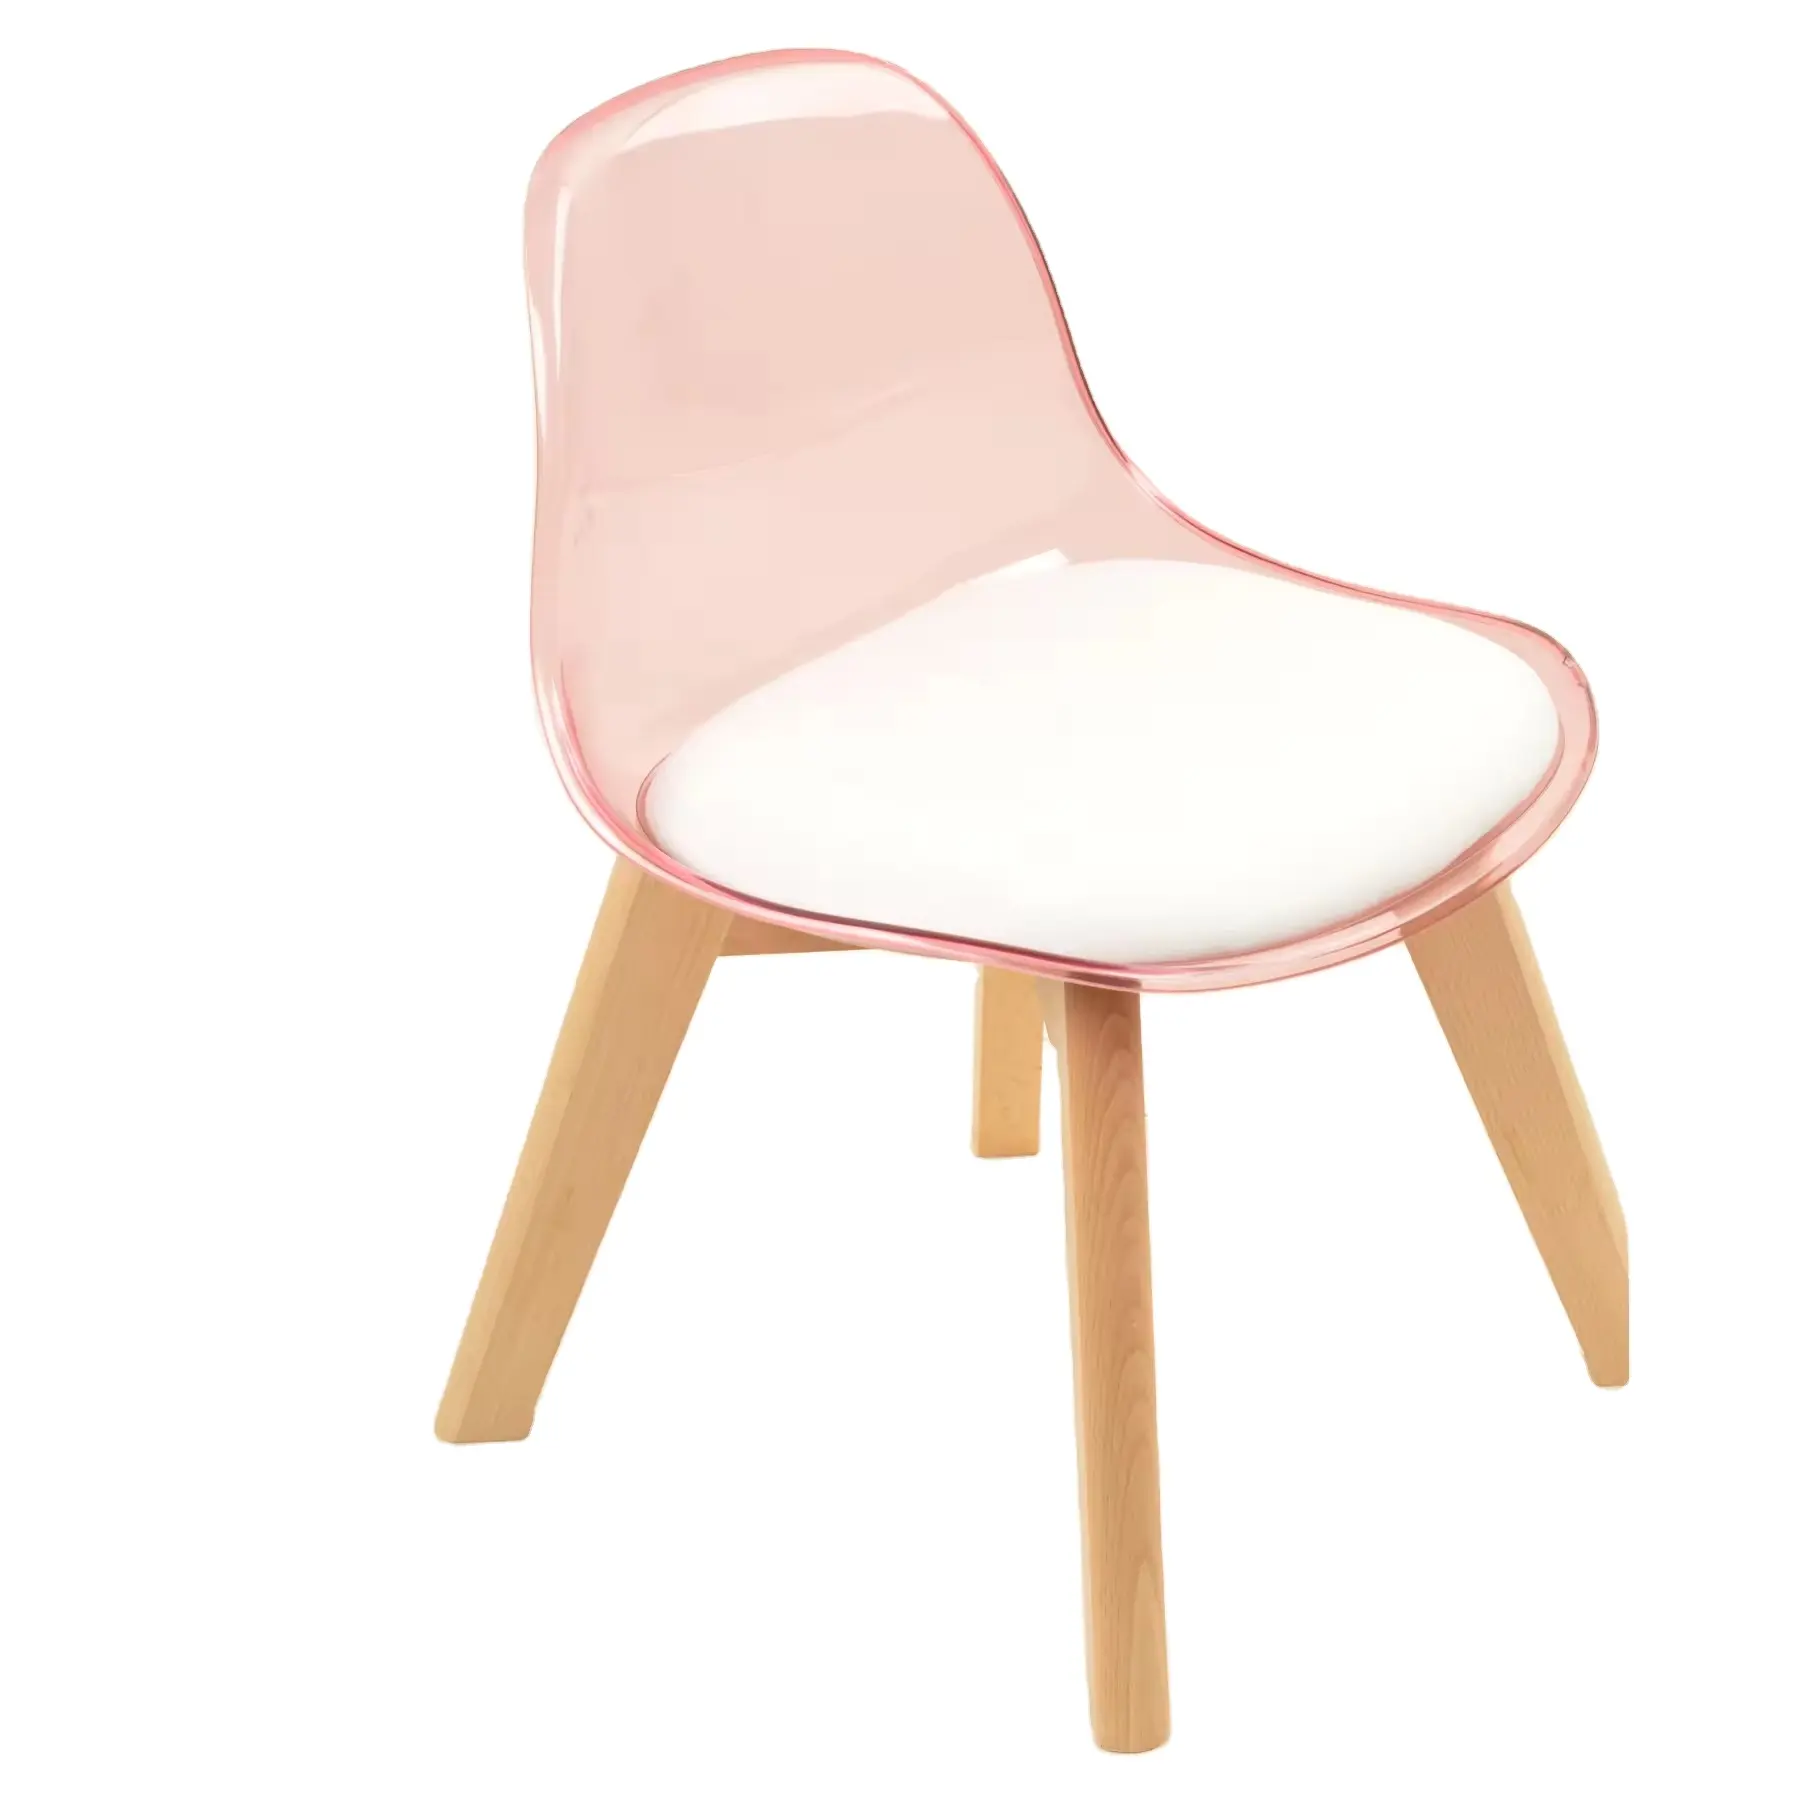 積み重ね可能なプラスチック製の椅子モダンな色のピンクのダイニングルームチェアカフェ家具プラスチックキッズチェア屋外